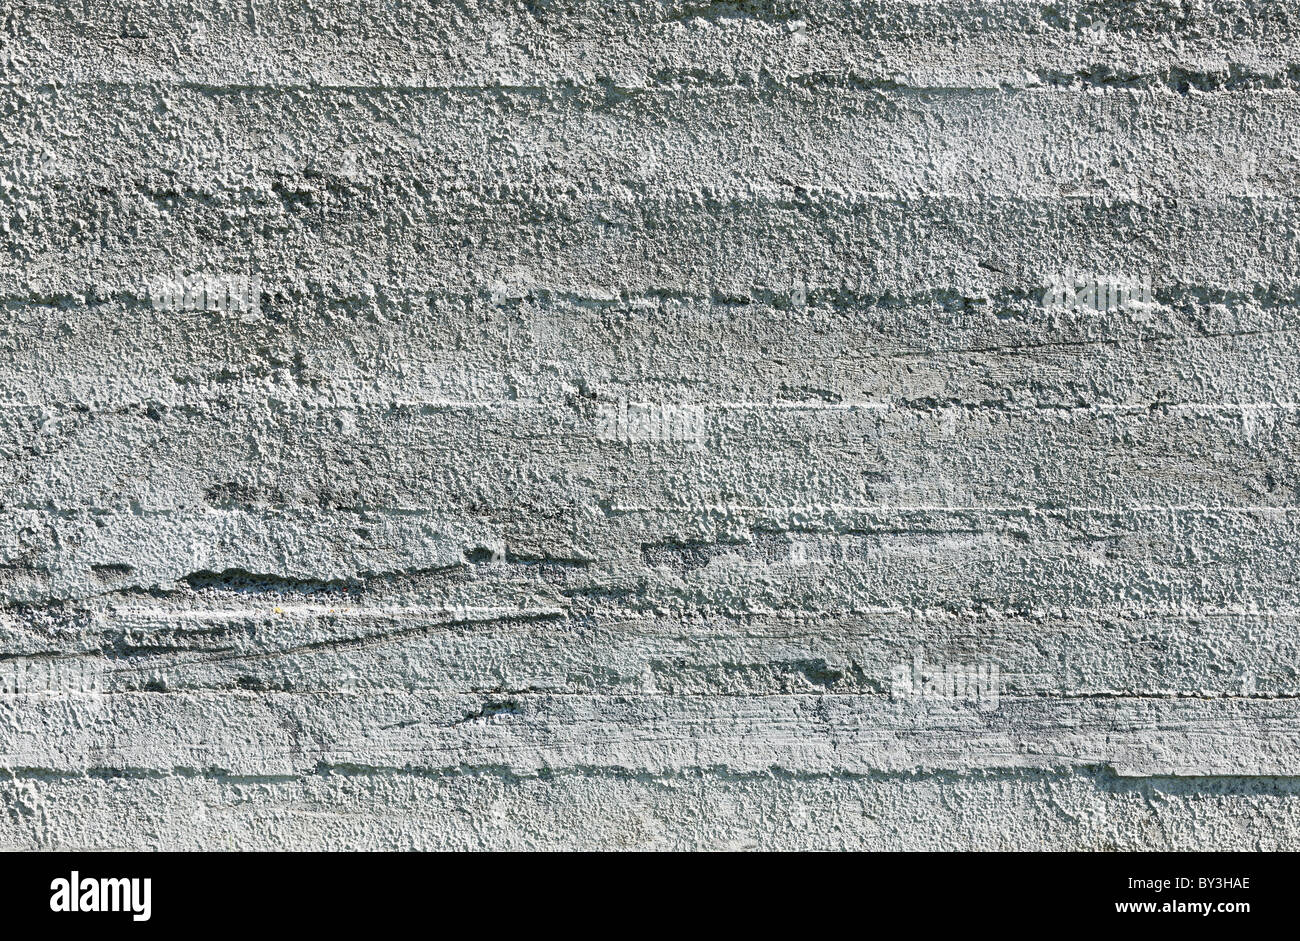 La texture du mur de béton vide parfaitement éclairée - Banque D'Images